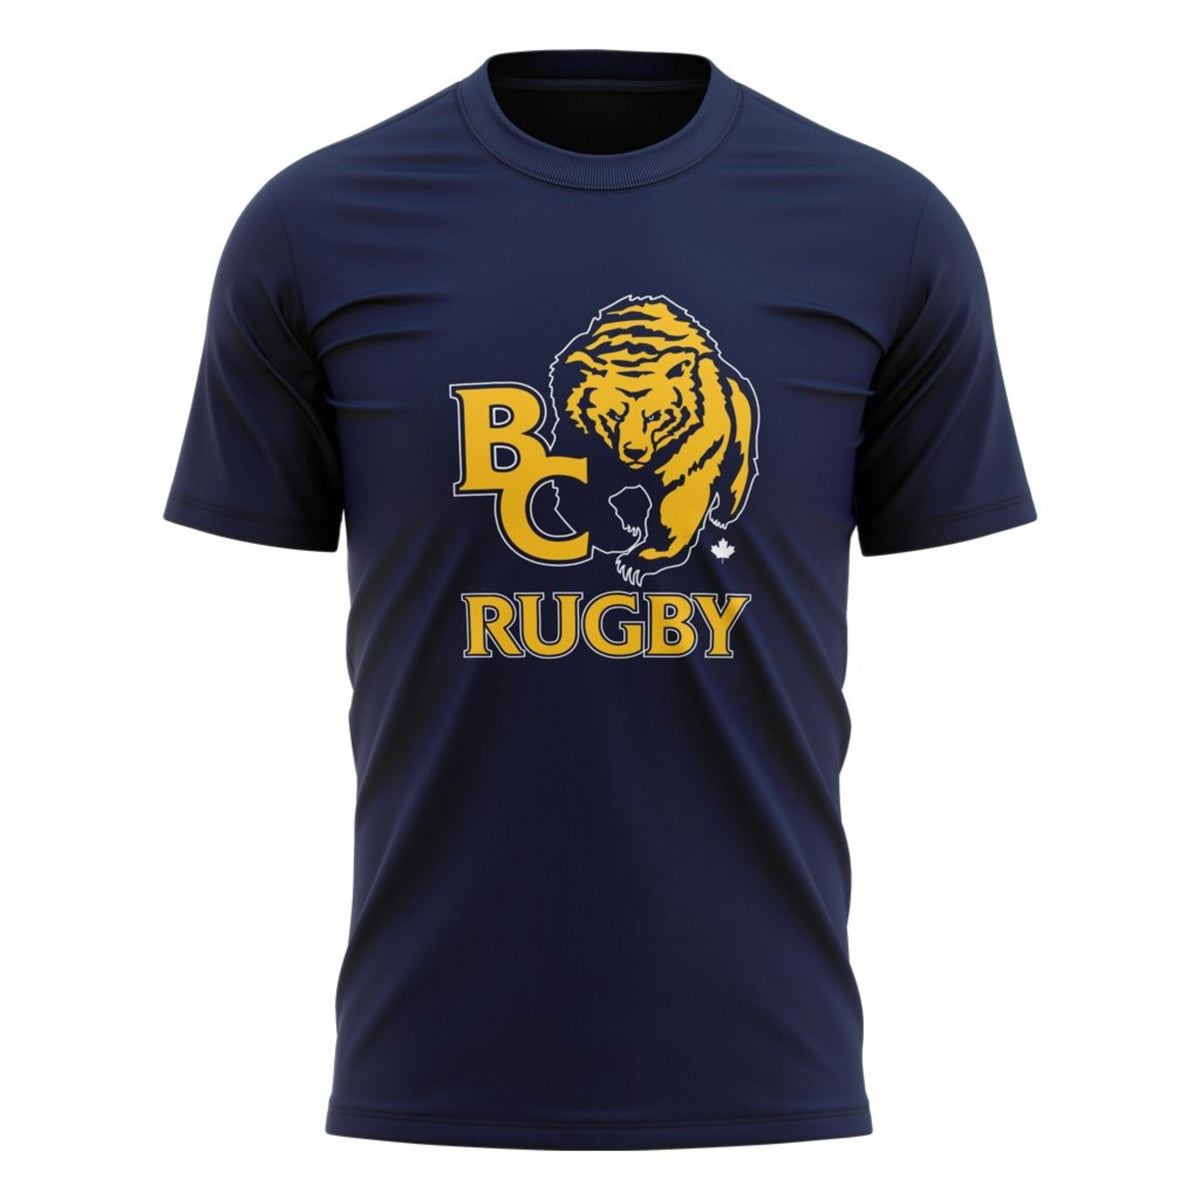 BC Rugby 2021 &quot;Team&quot; Tee - Men&#39;s Navy/Grey/White/Gold - www.therugbyshop.com www.therugbyshop.com MEN&#39;S / NAVY / S XIX Brands TEES BC Rugby 2021 &quot;Team&quot; Tee - Men&#39;s Navy/Grey/White/Gold